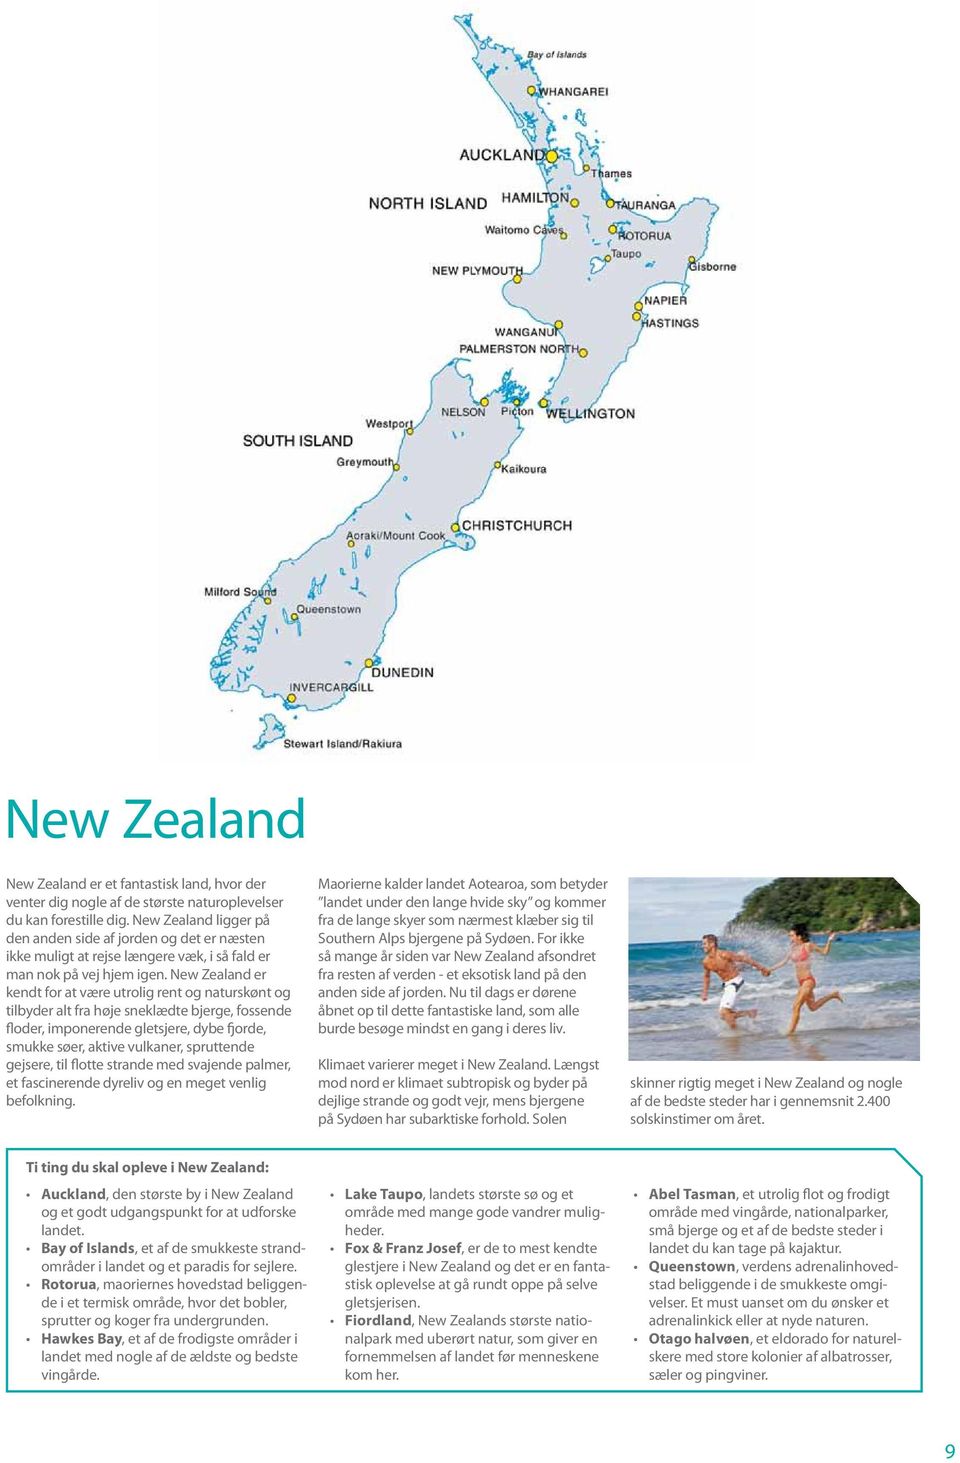 New Zealand er kendt for at være utrolig rent og naturskønt og tilbyder alt fra høje sneklædte bjerge, fossende floder, imponerende gletsjere, dybe fjorde, smukke søer, aktive vulkaner, spruttende